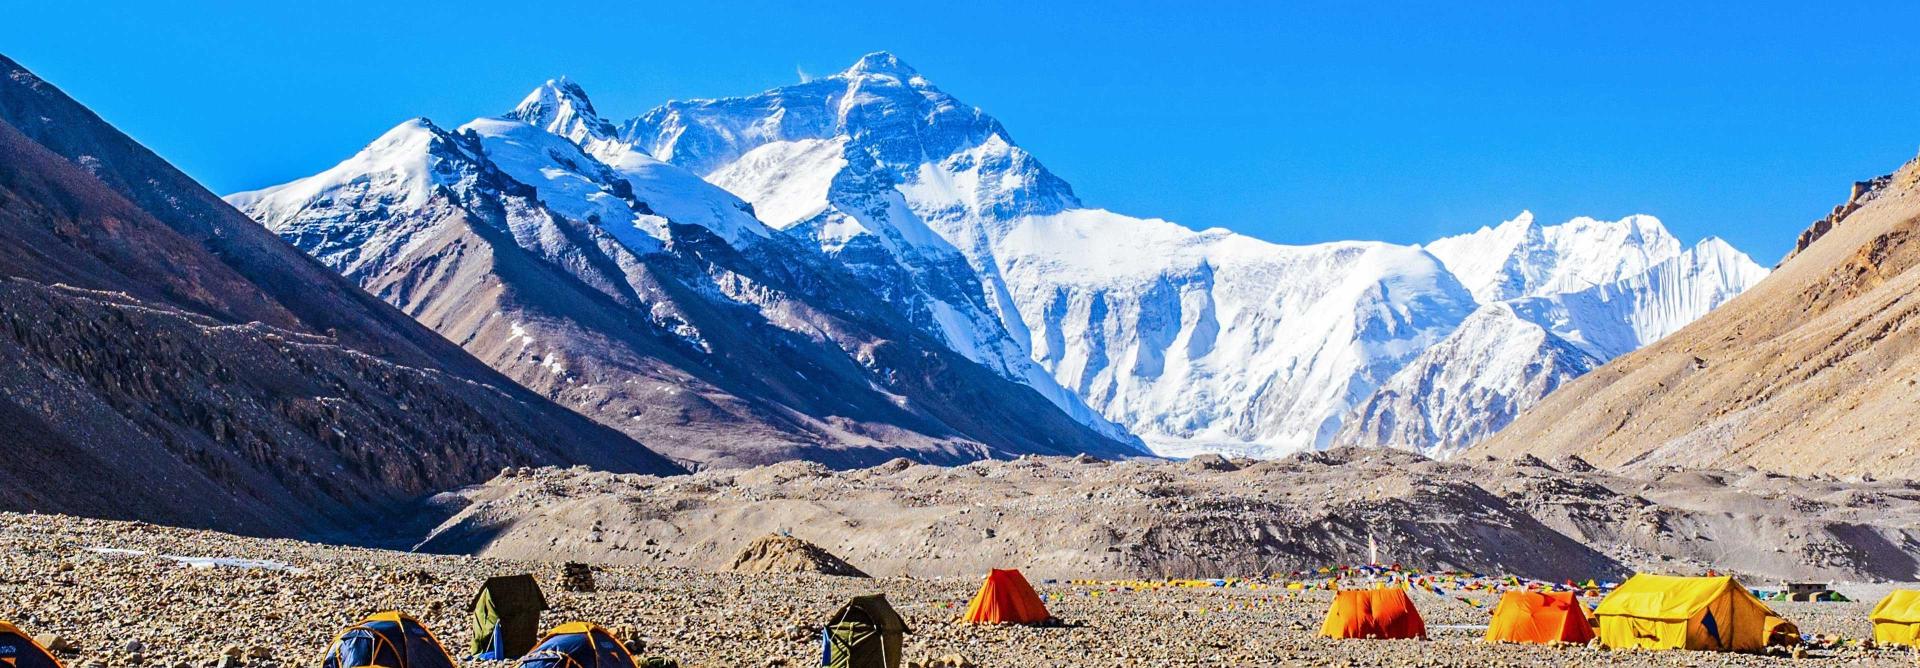 Базовый лагерь Эвереста с севера. Фото Charity Challenge